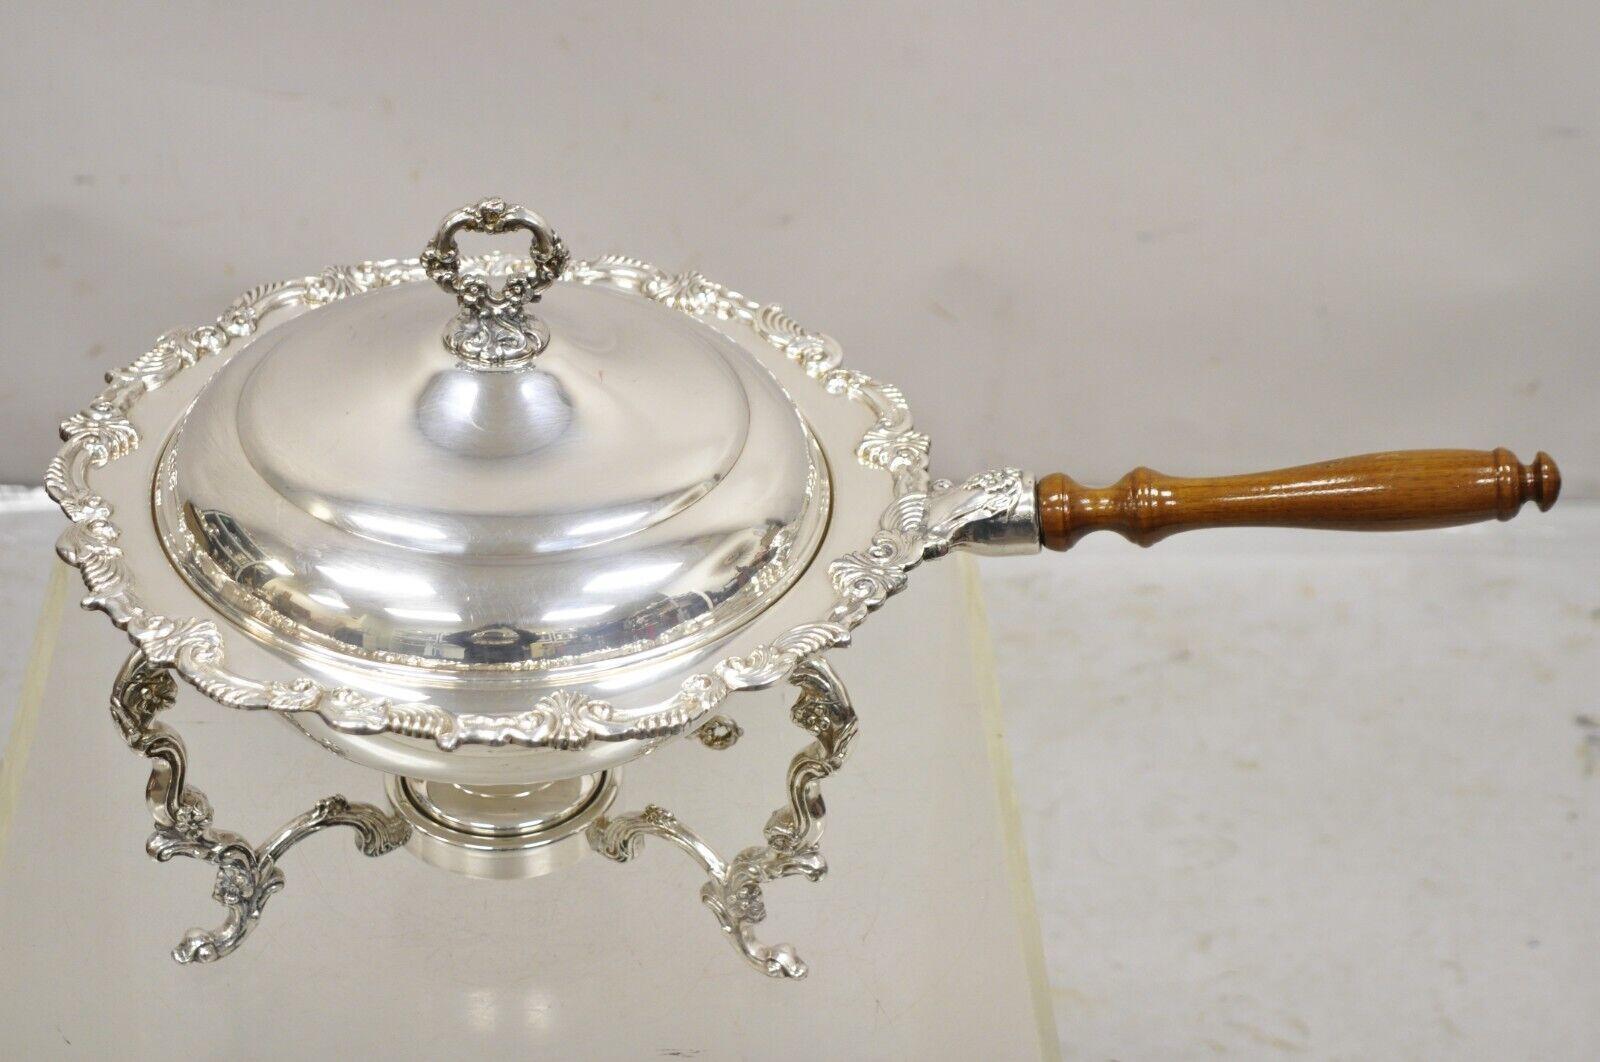 Vintage Victorian Style Ornate Silver Plated Chafing Dish Food Warmer mit hölzernen Griff und Brenner. Circa Mitte des 20. Jahrhunderts.
Abmessungen:  11,5